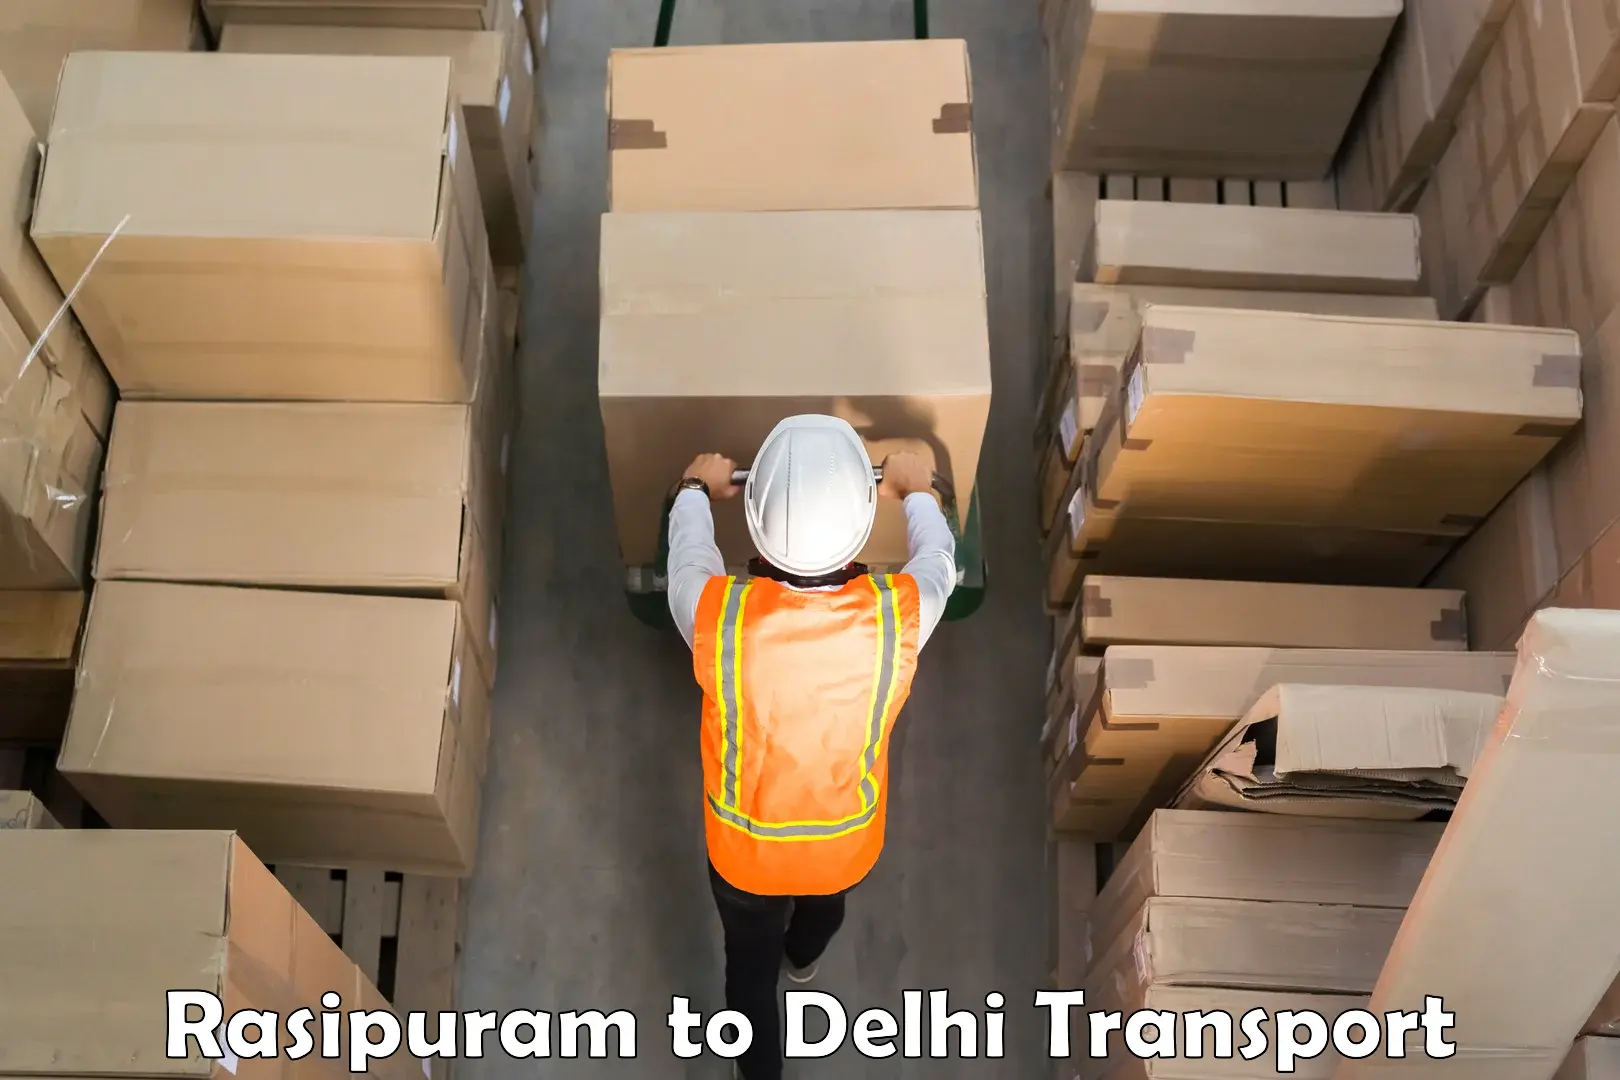 Shipping partner Rasipuram to East Delhi